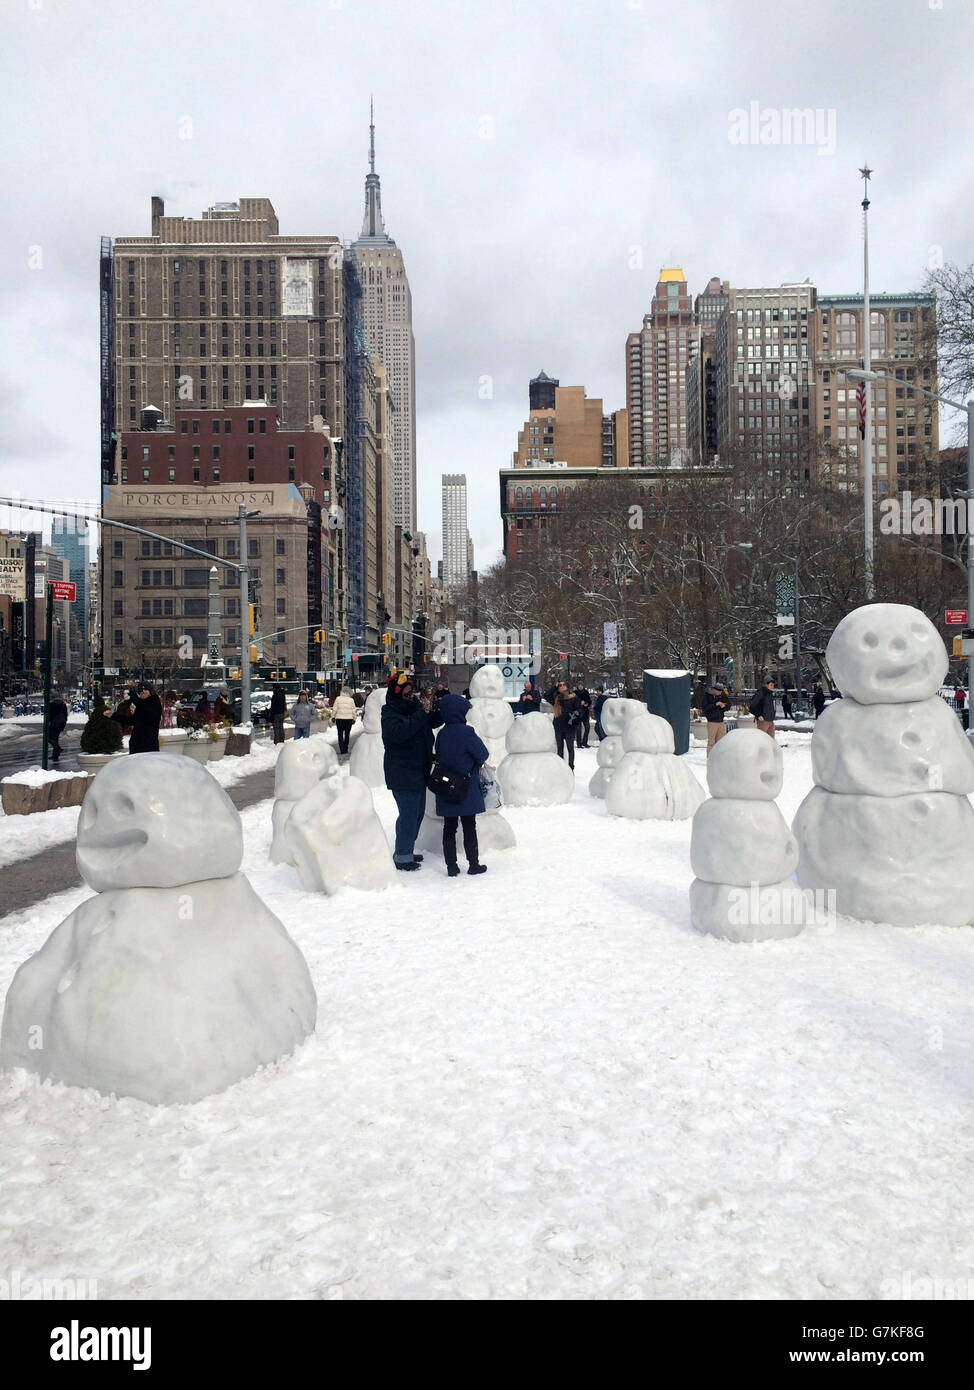 États-Unis, New York : alors que la tempête d'hiver Juno s'ouvre le 27 janvier 2015, les New-Yorkais construisent une communauté de grands bonhommes de neige à Flatiron Plaza, à la périphérie de Madison Square Park à New York. NEWZULU/RUSSELL WARSHAY Banque D'Images